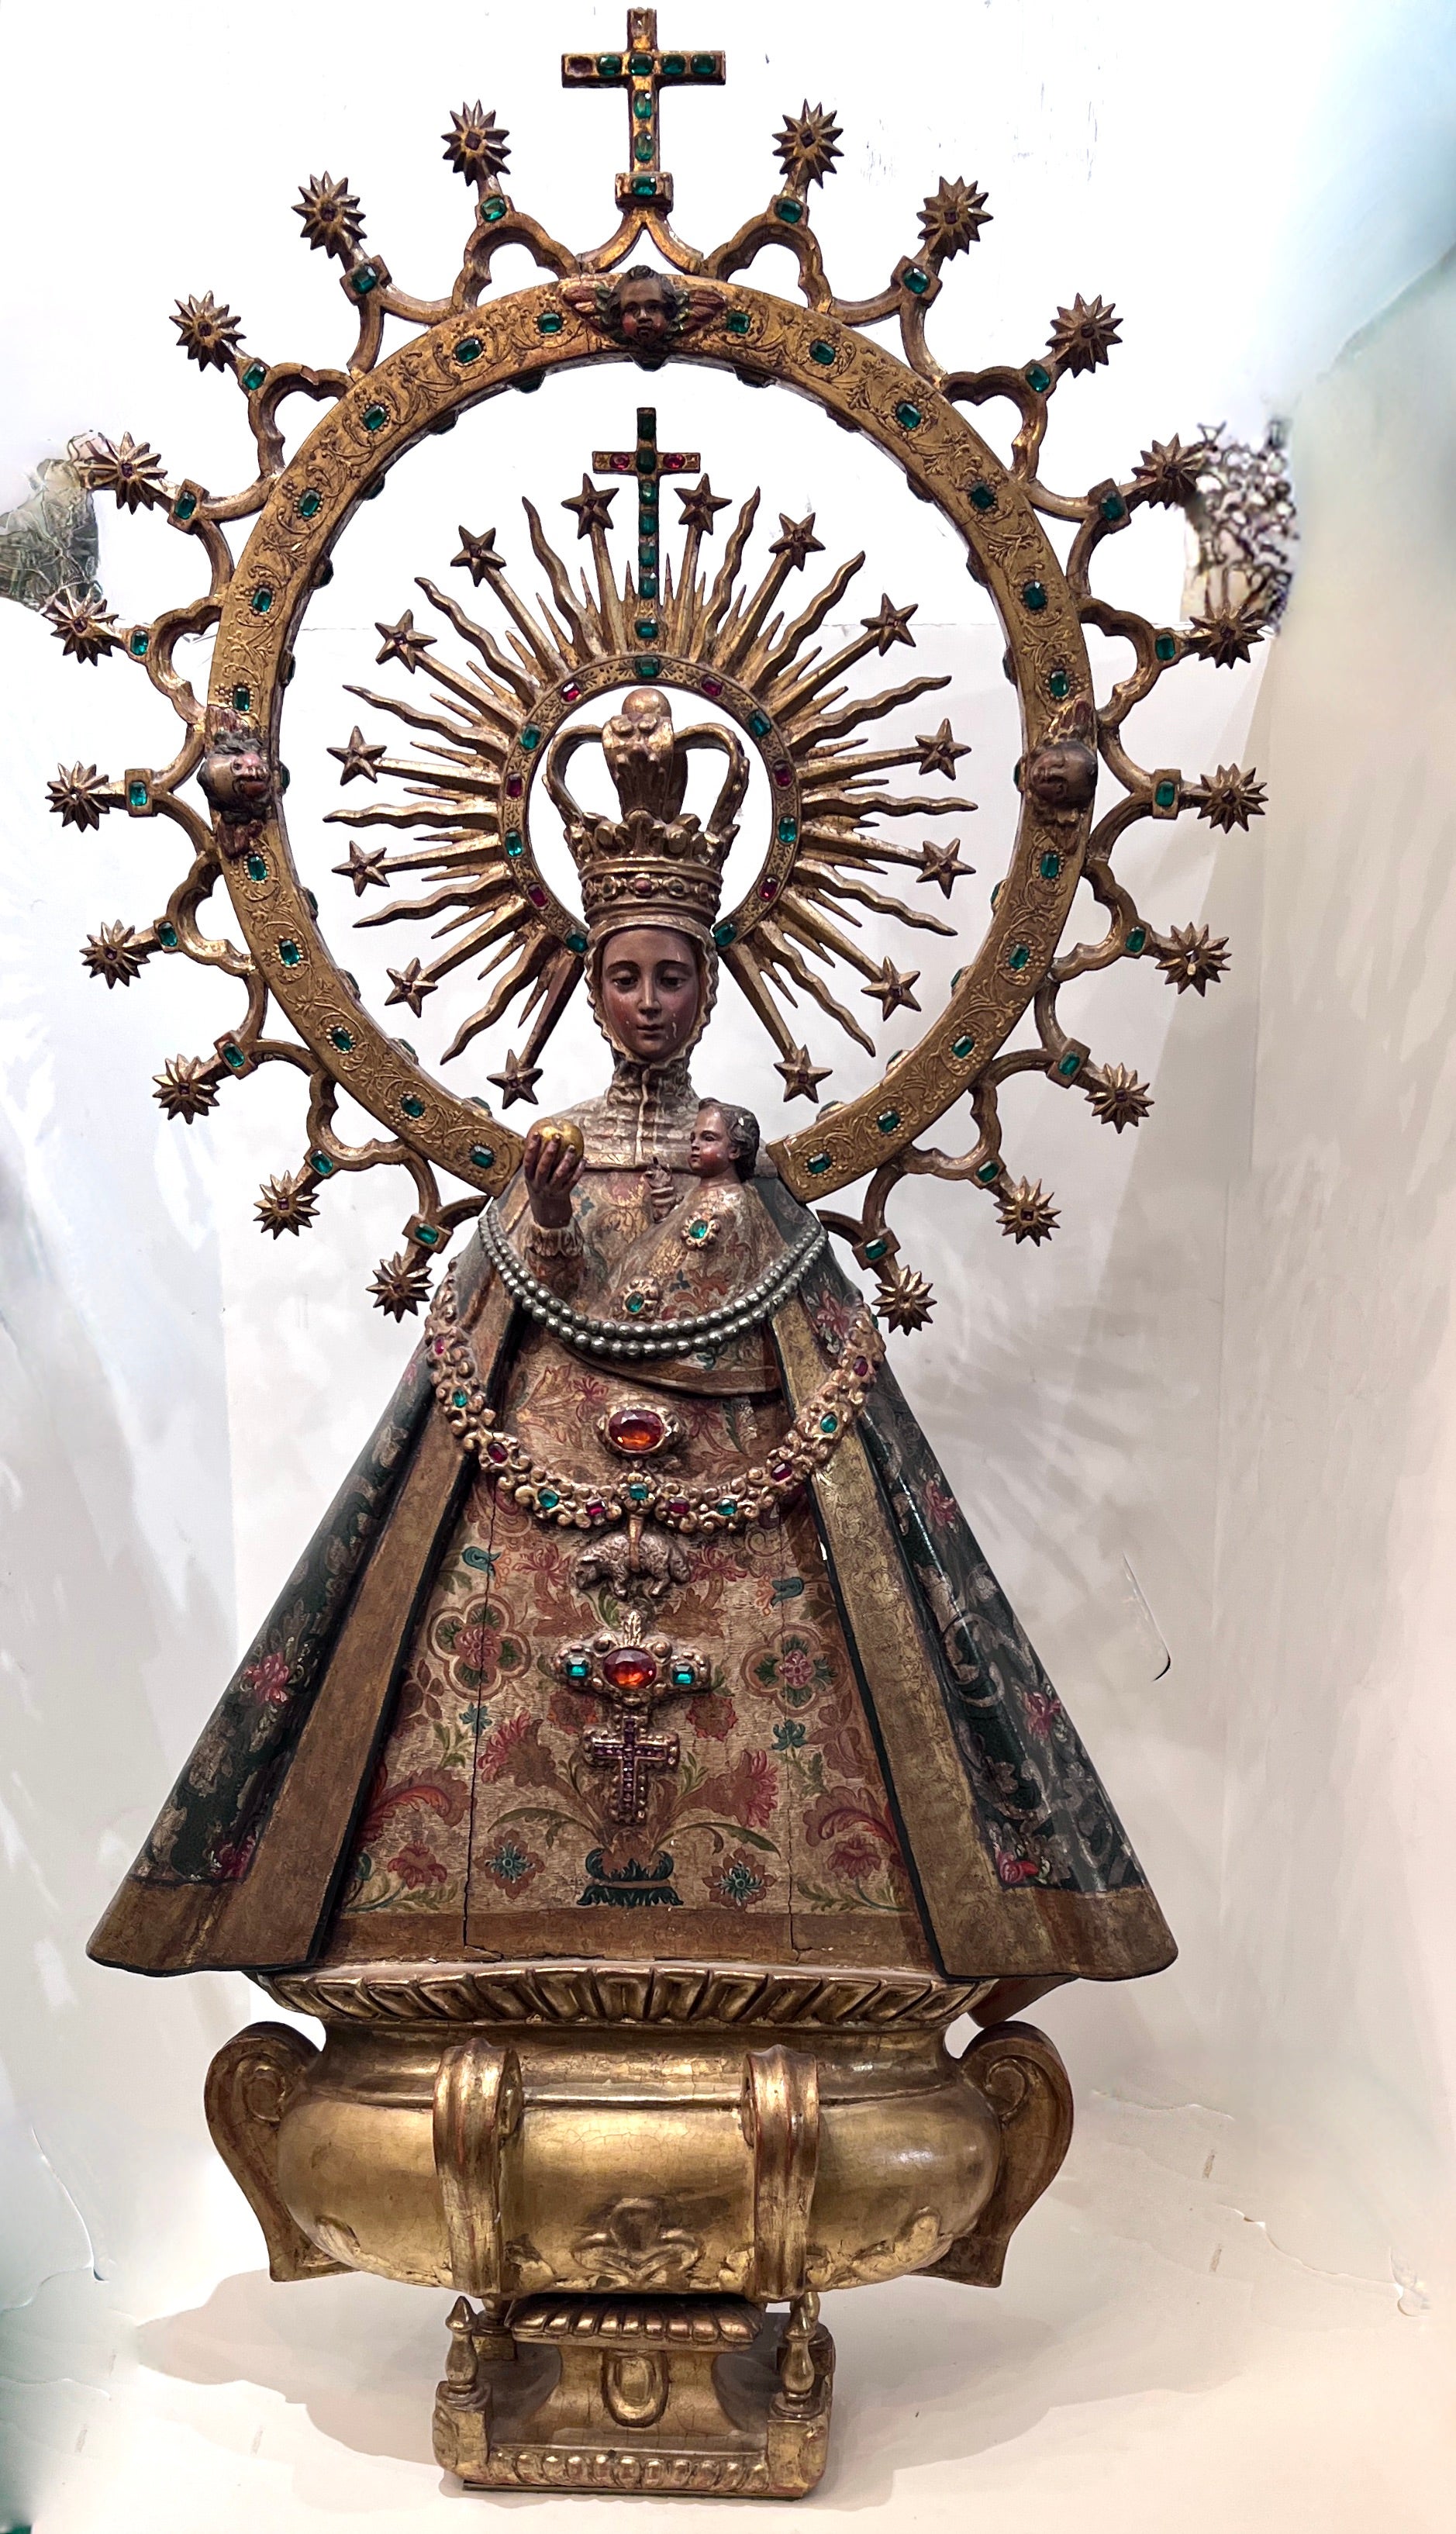 A.I.C. - La Vierge Marie, 19ème C. Sculpture en bois datant vraisemblablement du 19ème siècle au Mexique.

La pièce est entièrement fabriquée à la main et est assez grande (45